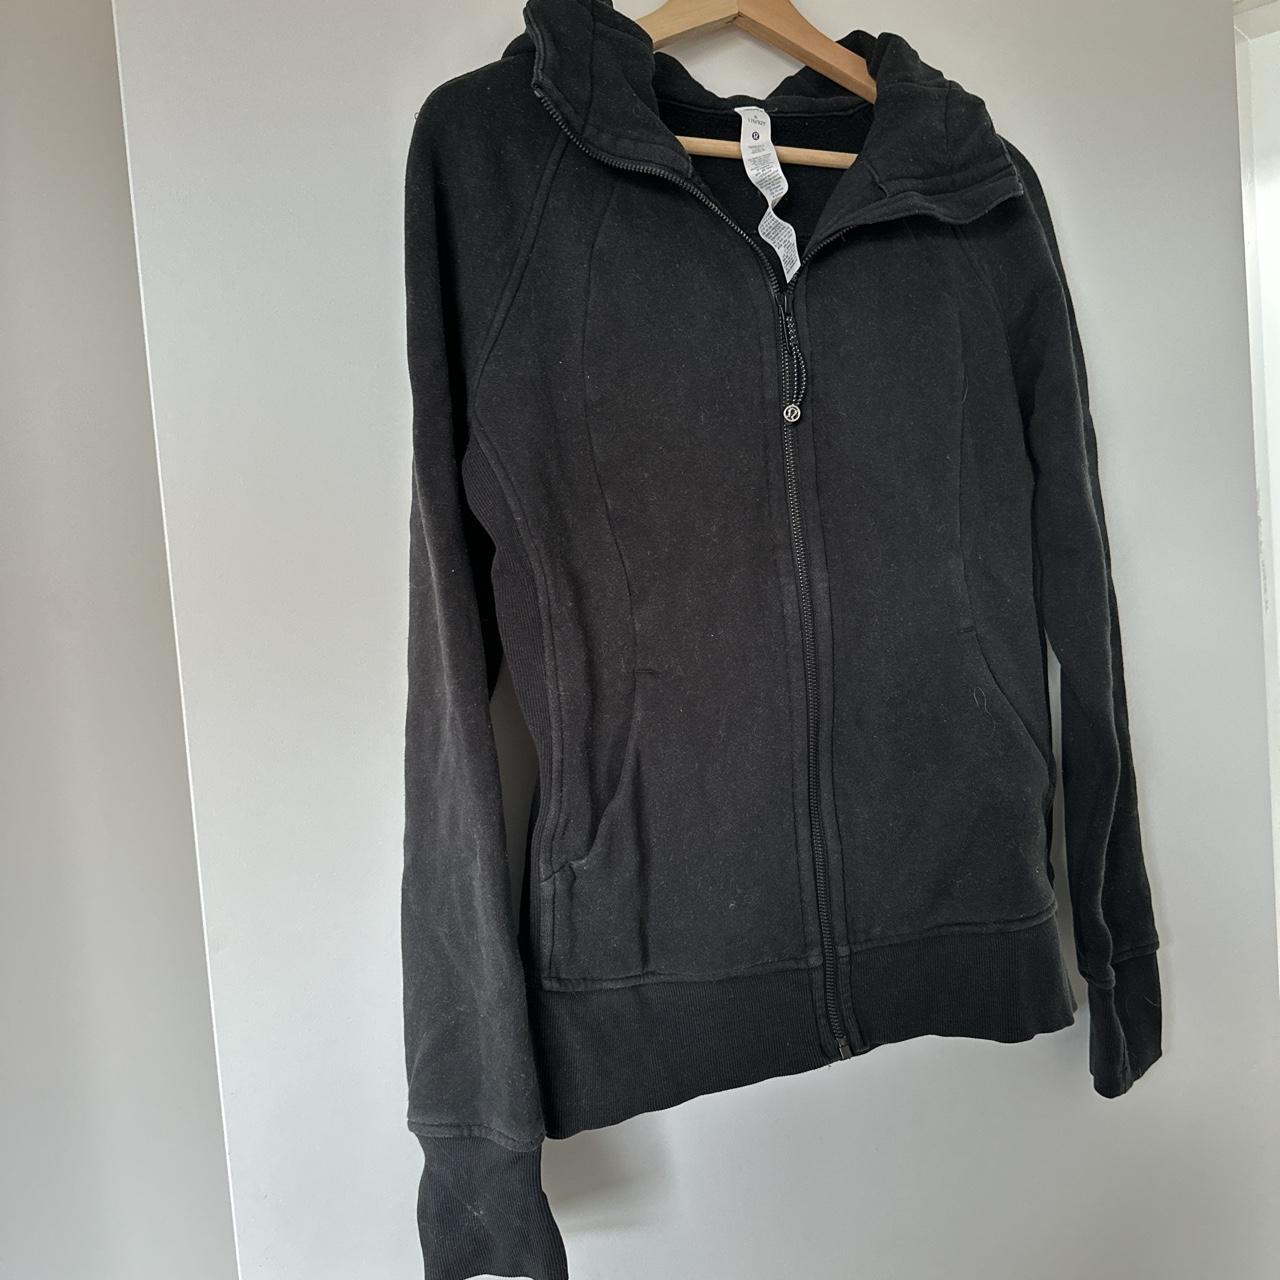 Lululemon Hooded Jacket jumper size 8 - (Aus size... - Depop